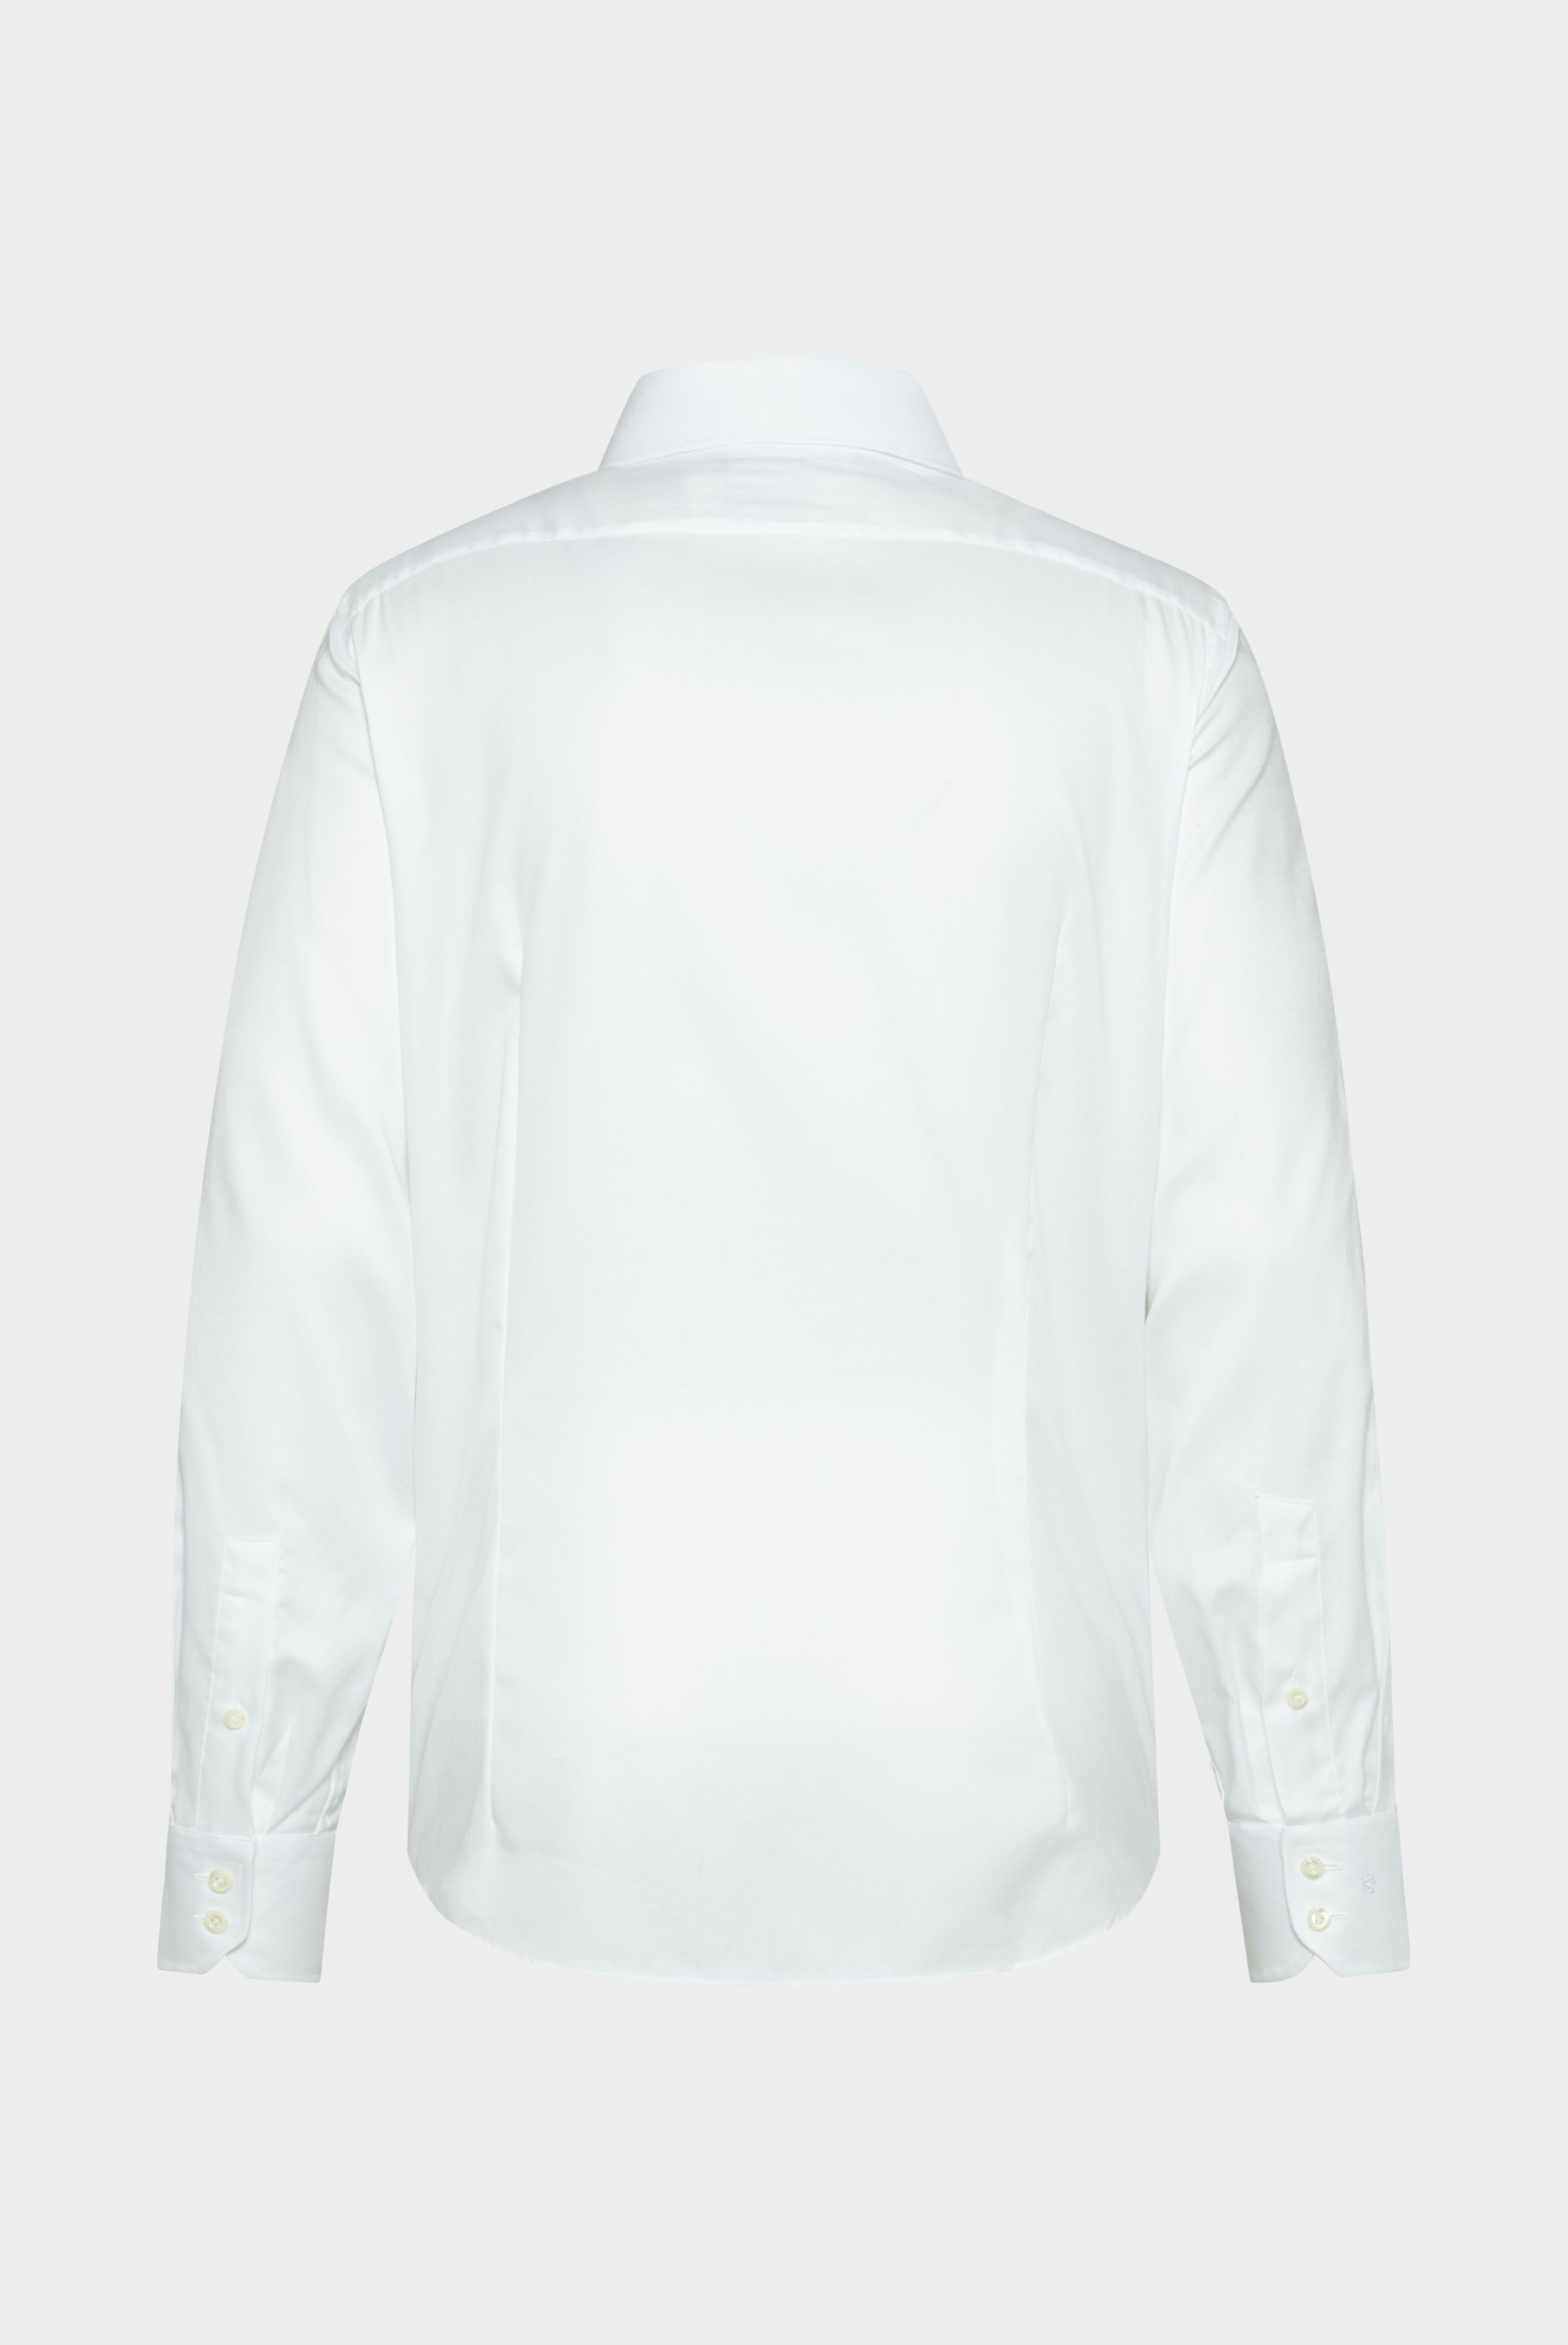 Business Shirts+Structured Plain Shirt, Natté/Basket Weave+20.2020.AV.130872.000.37